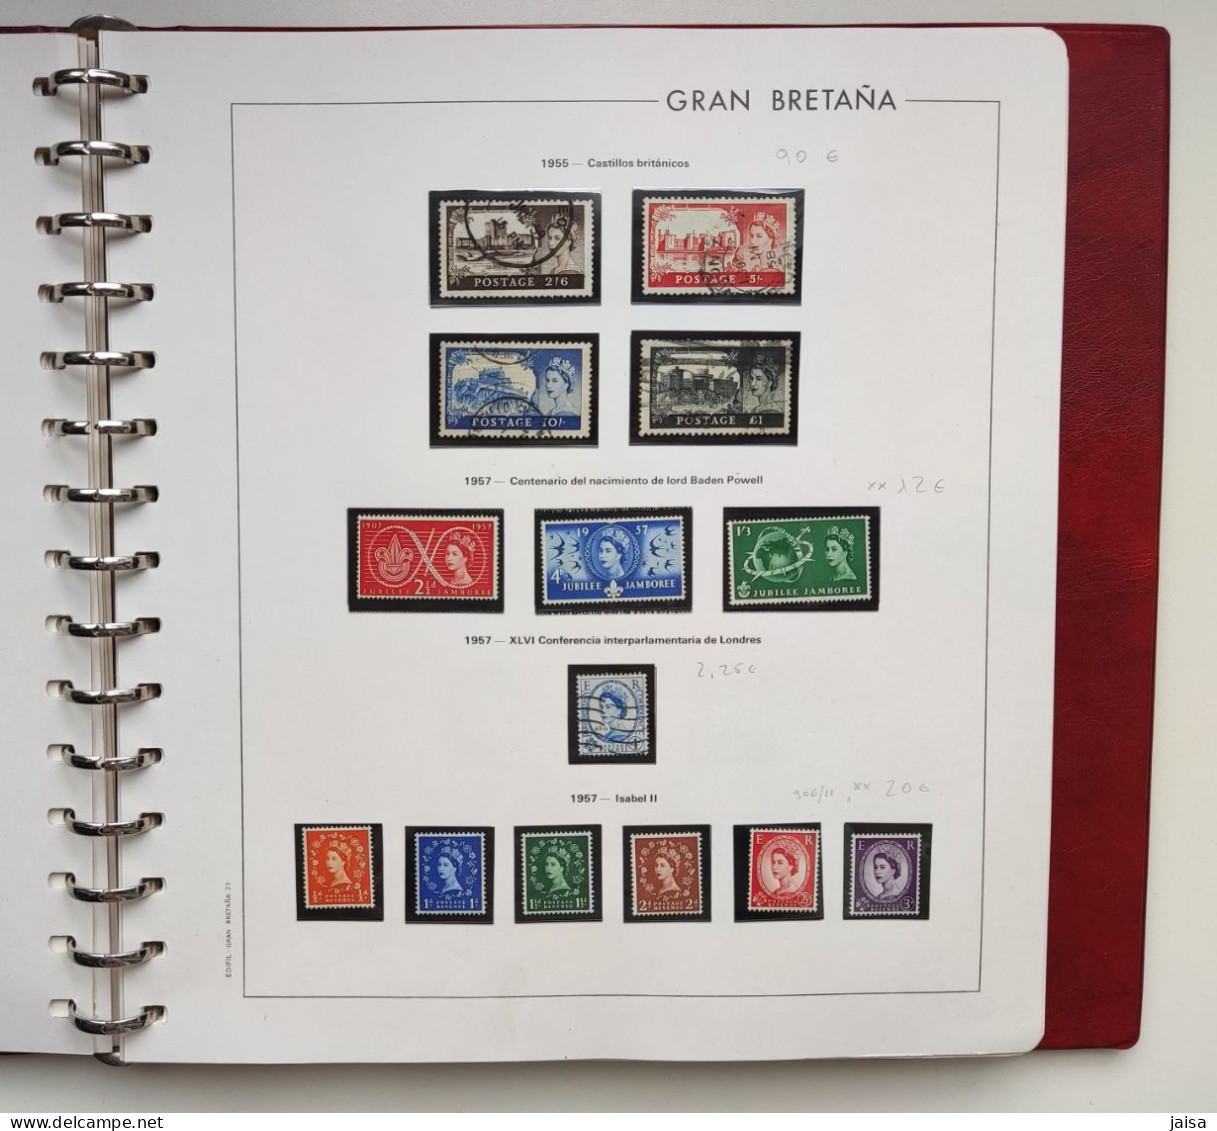 GRAN BRETAÑA. Años 1840 - 1975.Album,hojas y sellos.